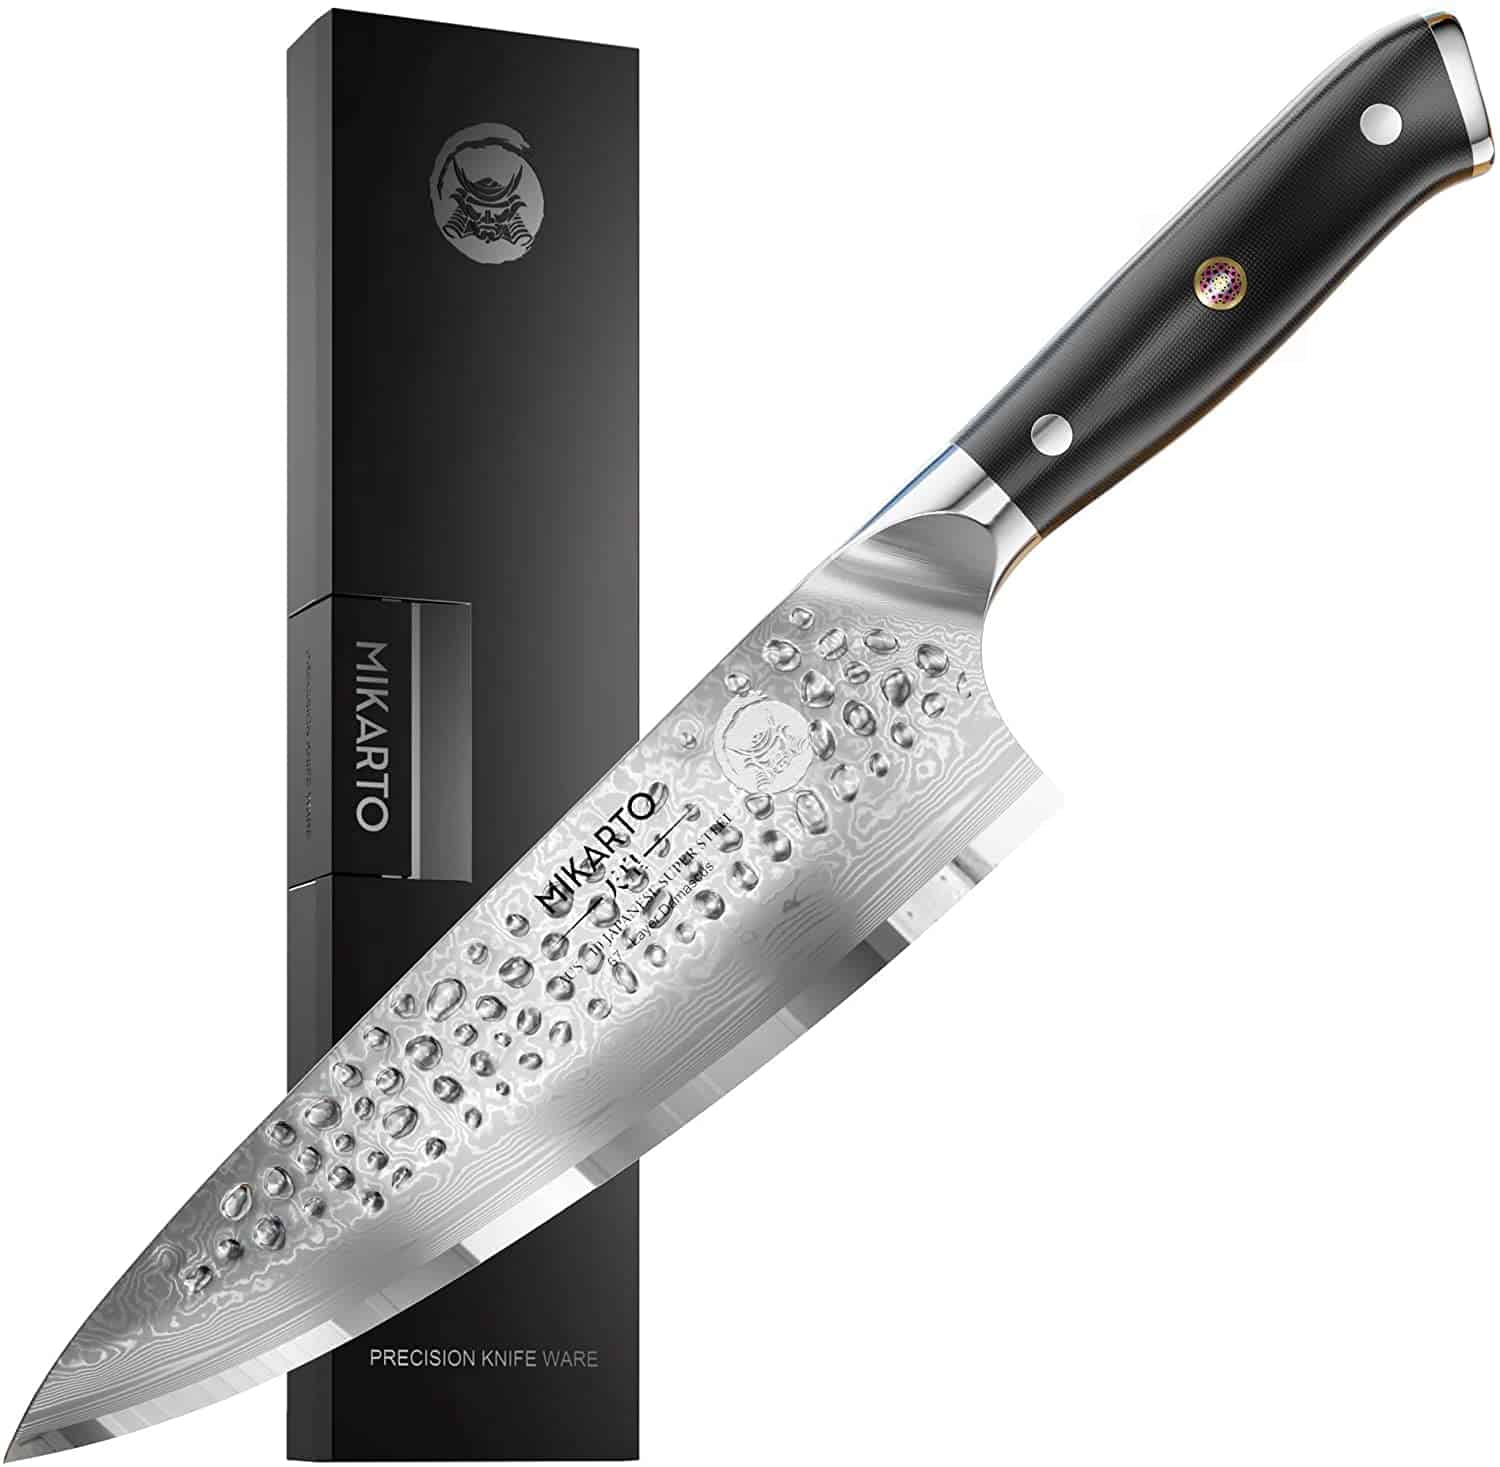 Bästa AUS 10 japansk stålkniv för kockar- Mikarto Japanese Chef Knife 8 Inch Gyuto